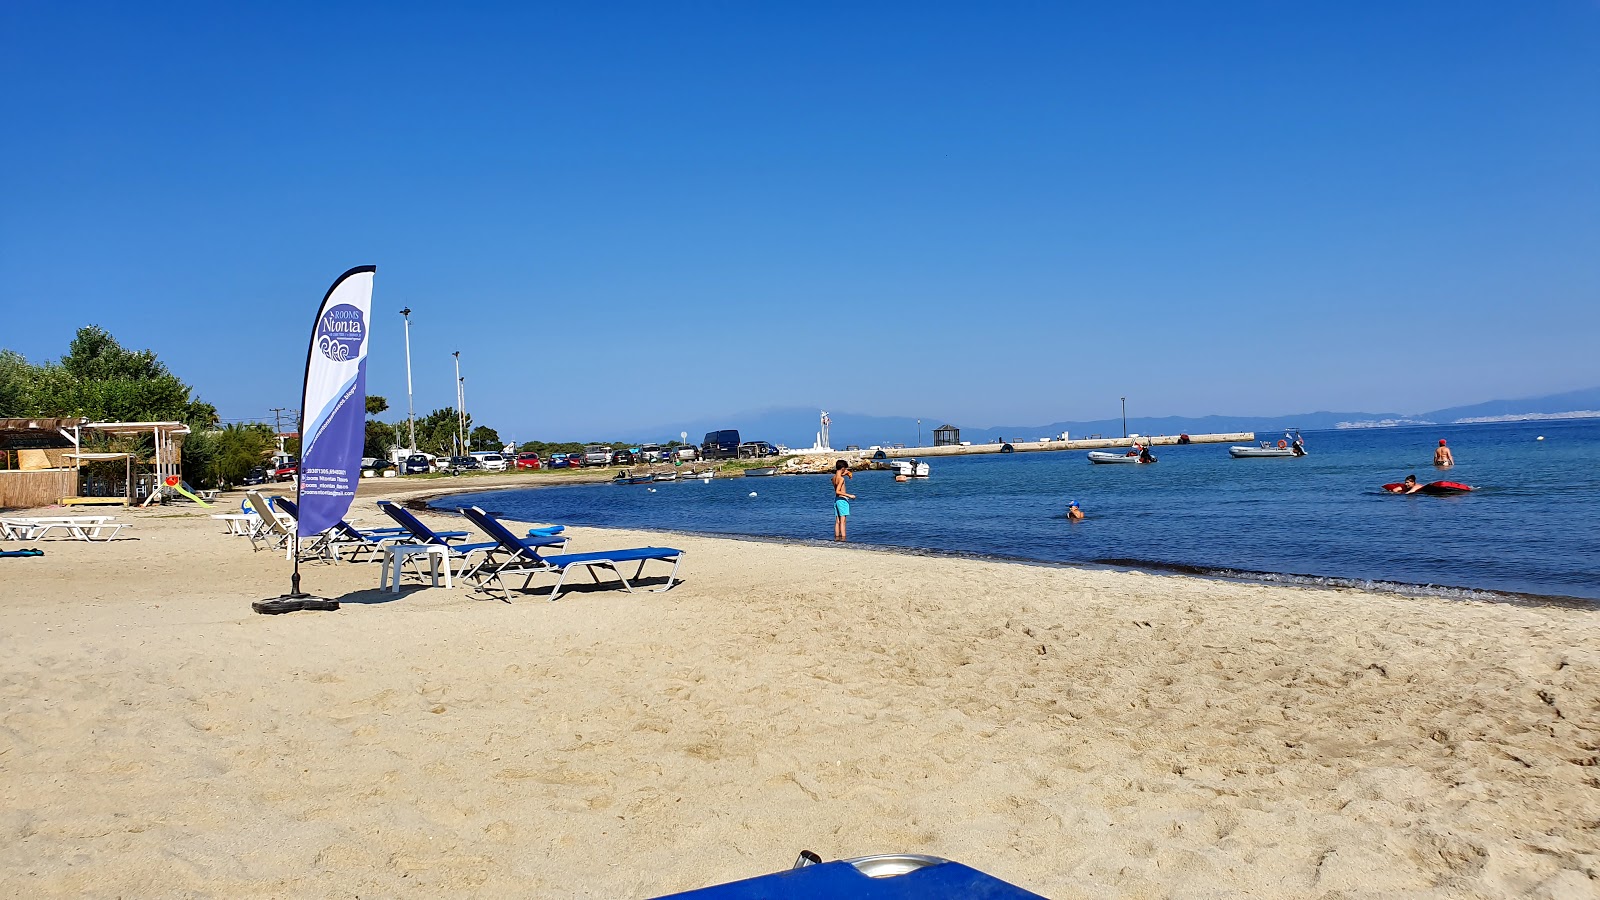 Foto di Skala Prinos beach ubicato in zona naturale